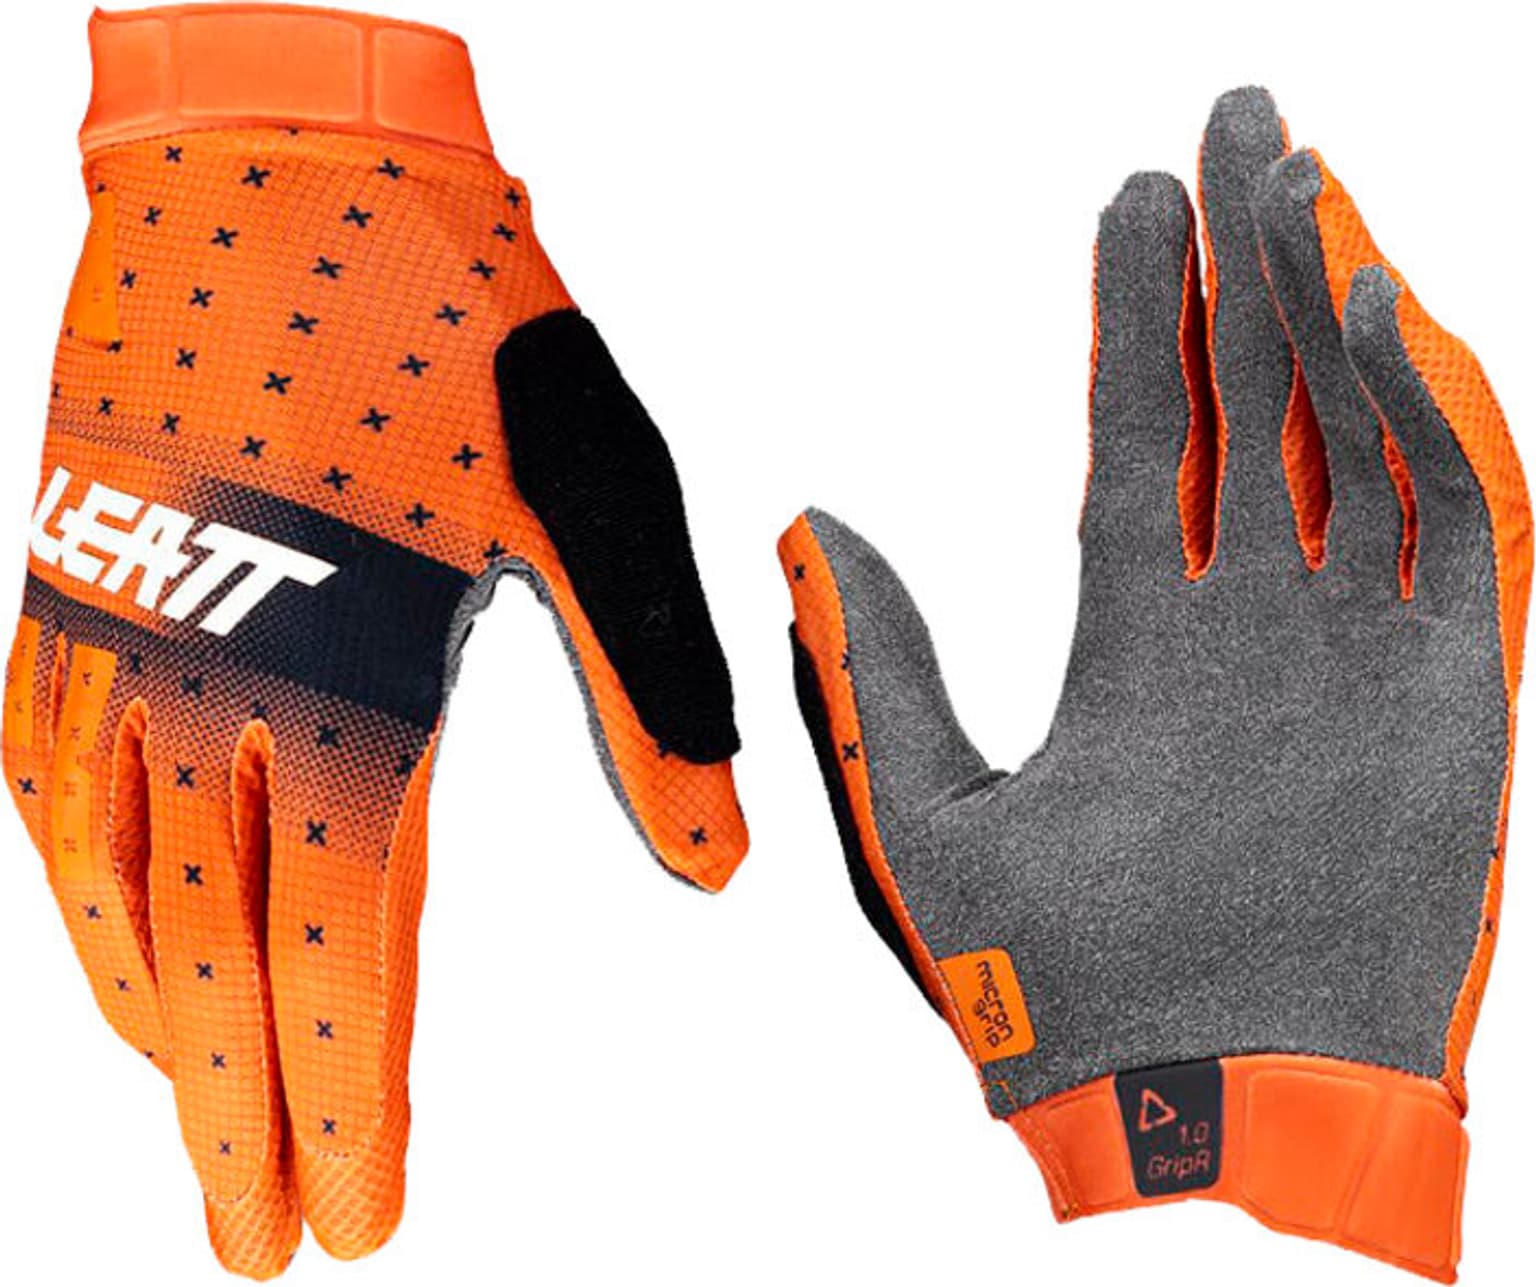 Leatt Leatt MTB Glove 1.0 GripR Bike-Handschuhe orange 2